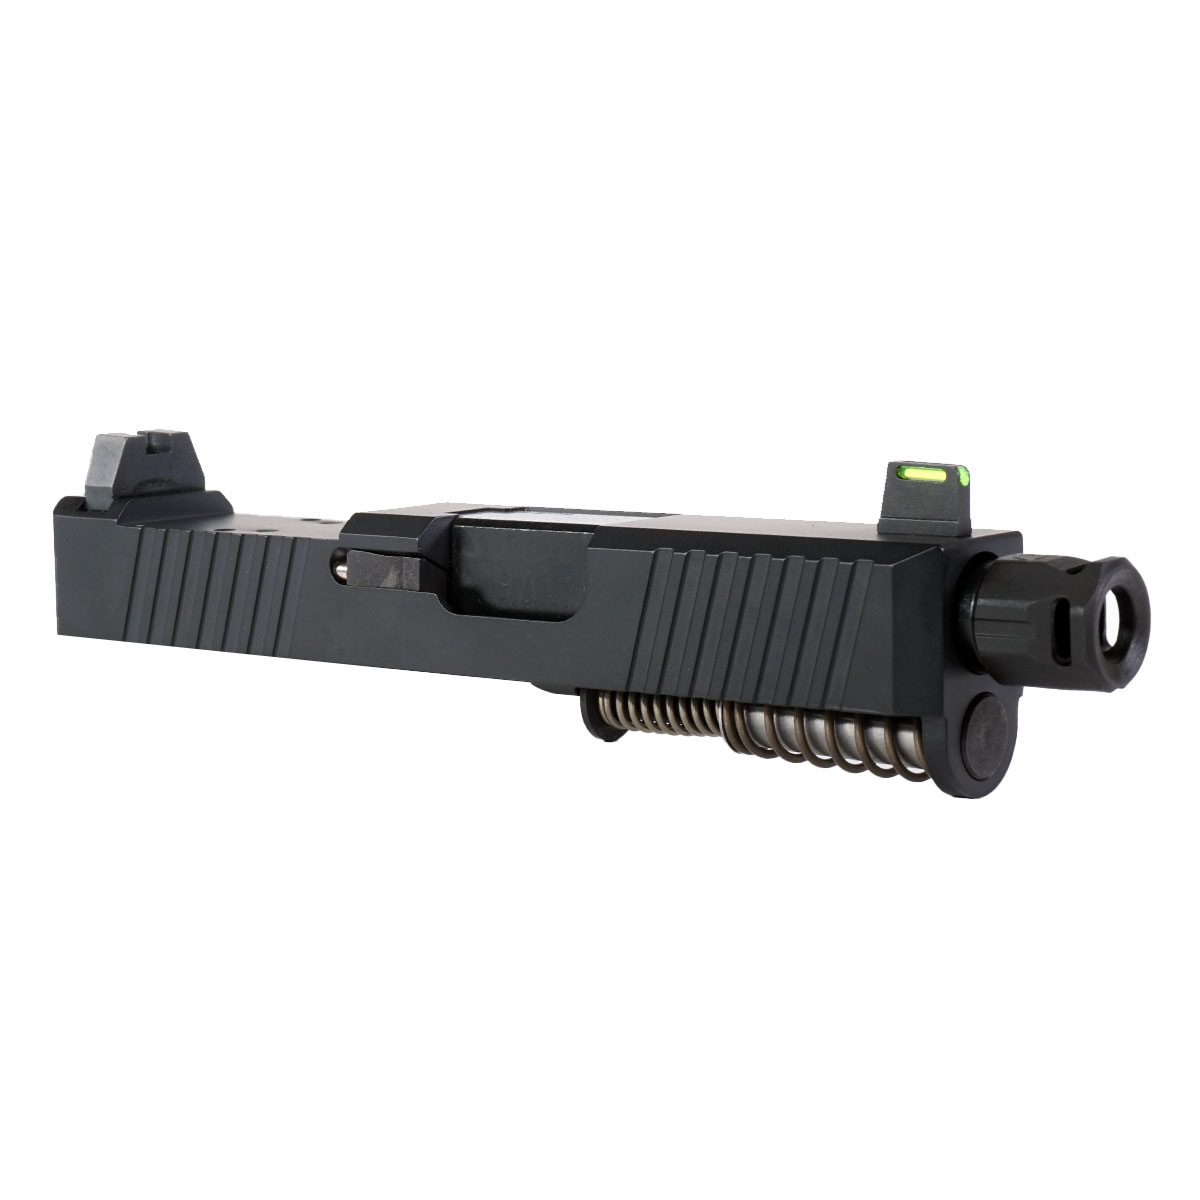 DDS 'Bad Company' 9mm Complete Slide Kit - Glock 26 Gen 1-3 Compatible